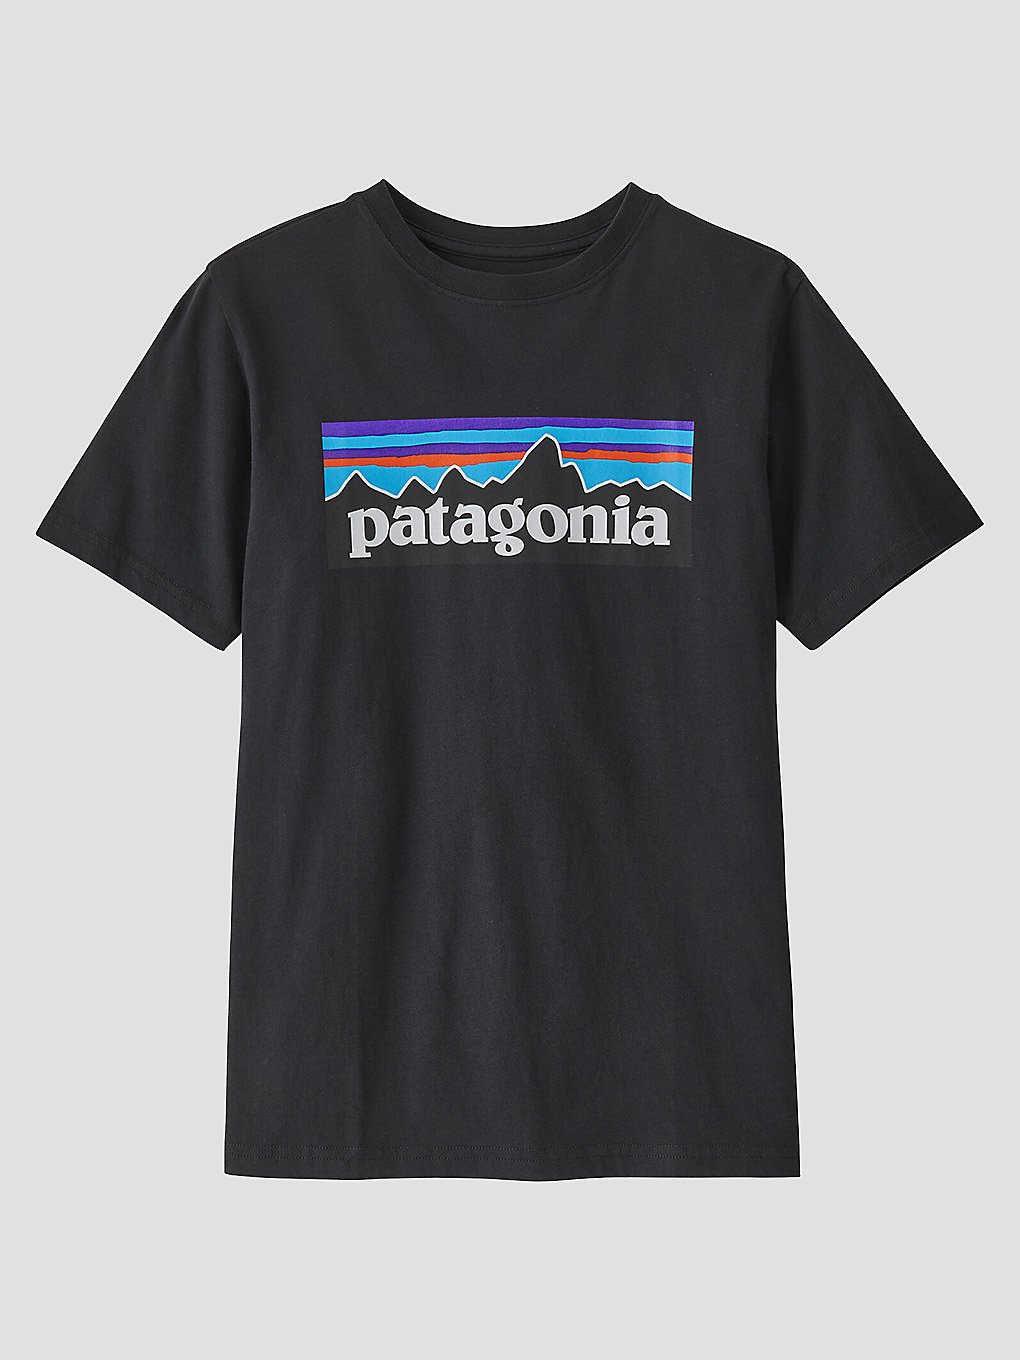 Patagonia Regenerative Organic Certified Cotton P- T-Shirt ink black kaufen